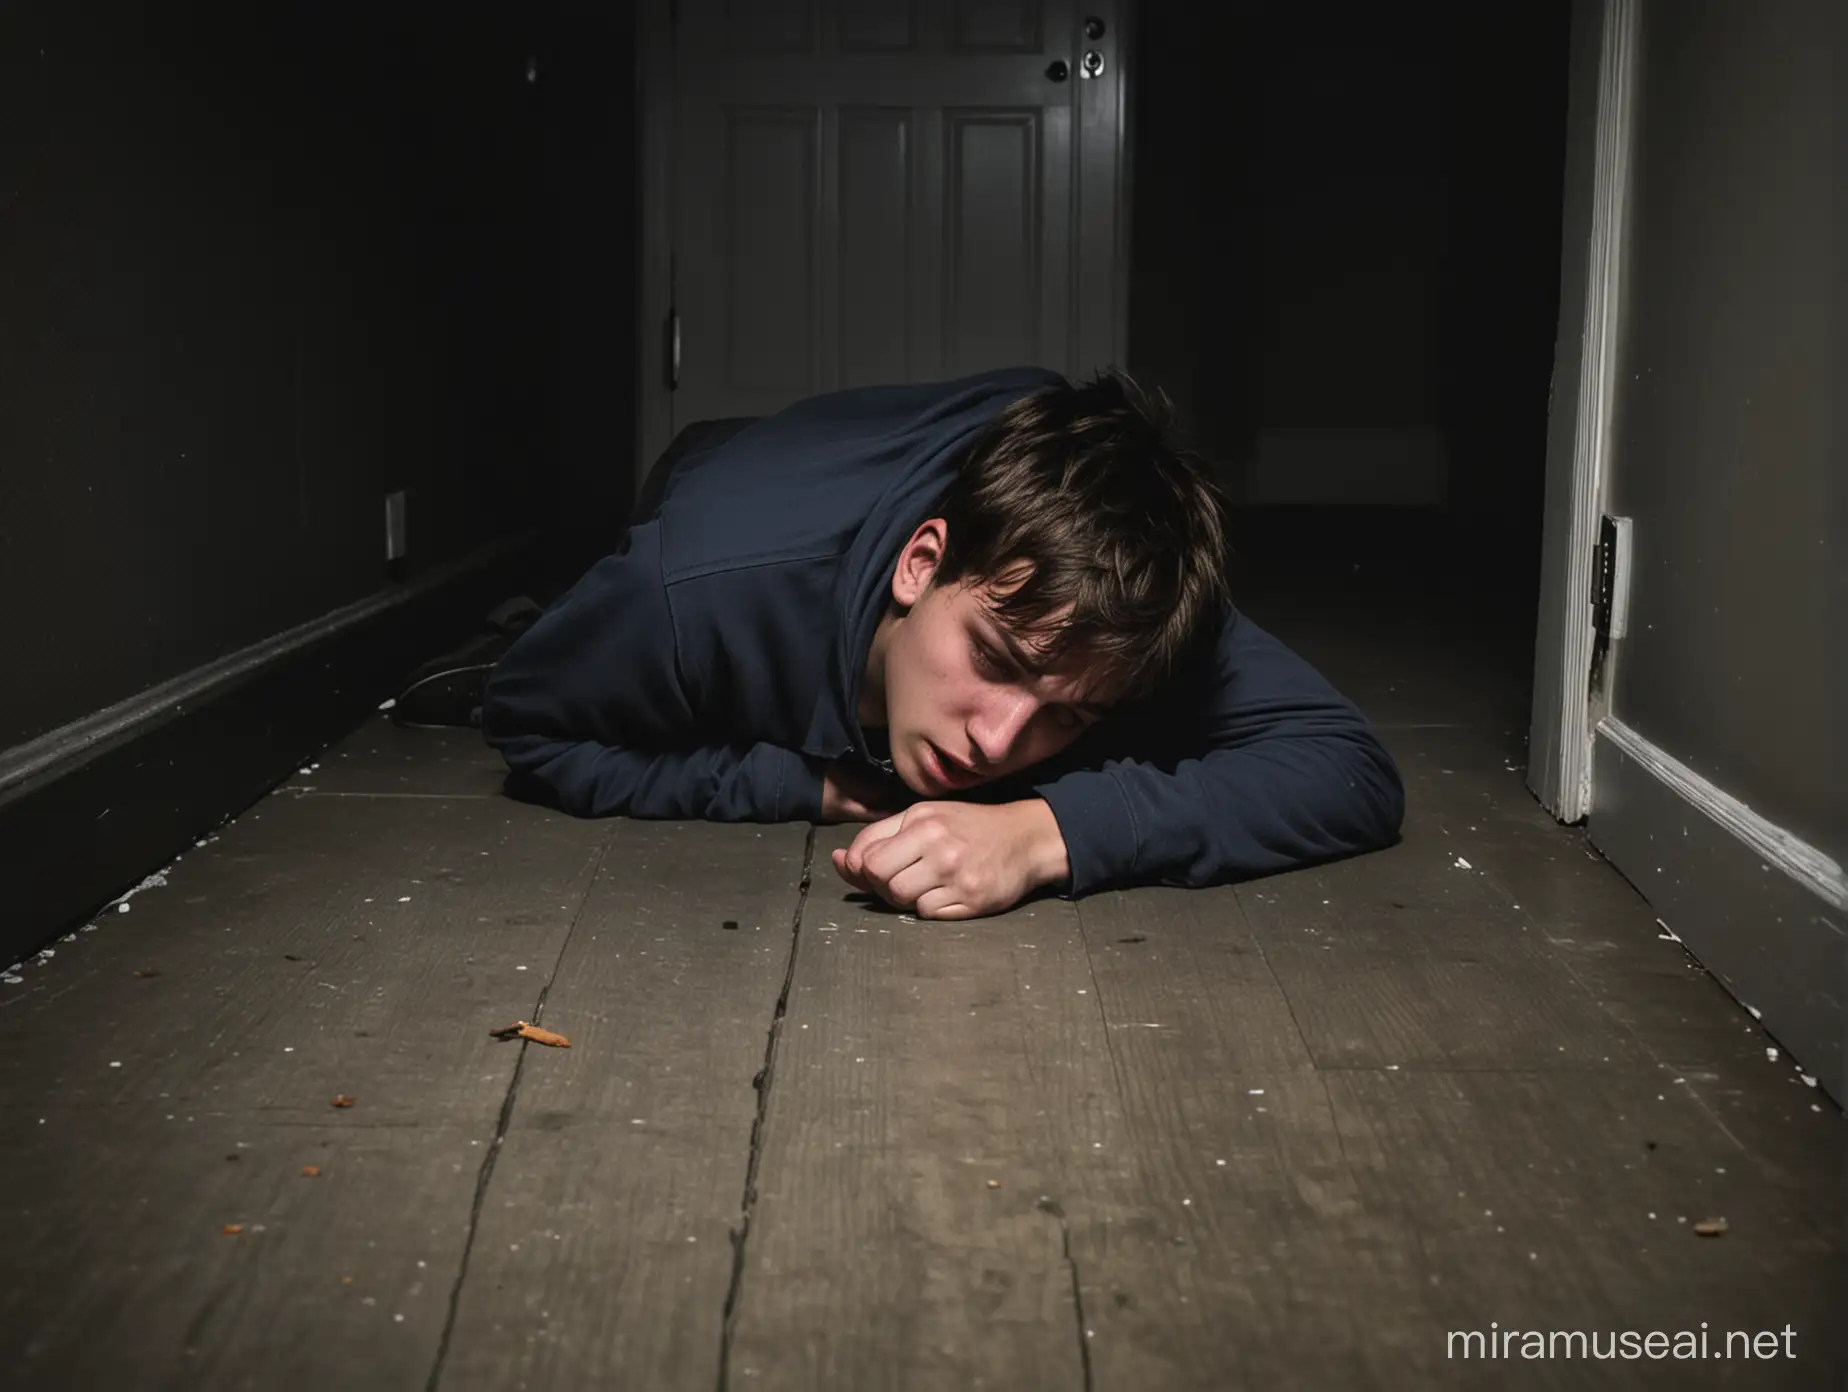 un joven adolescente hombre, desmayado boca abajo en el piso de una habitación muy oscura, por la noche.